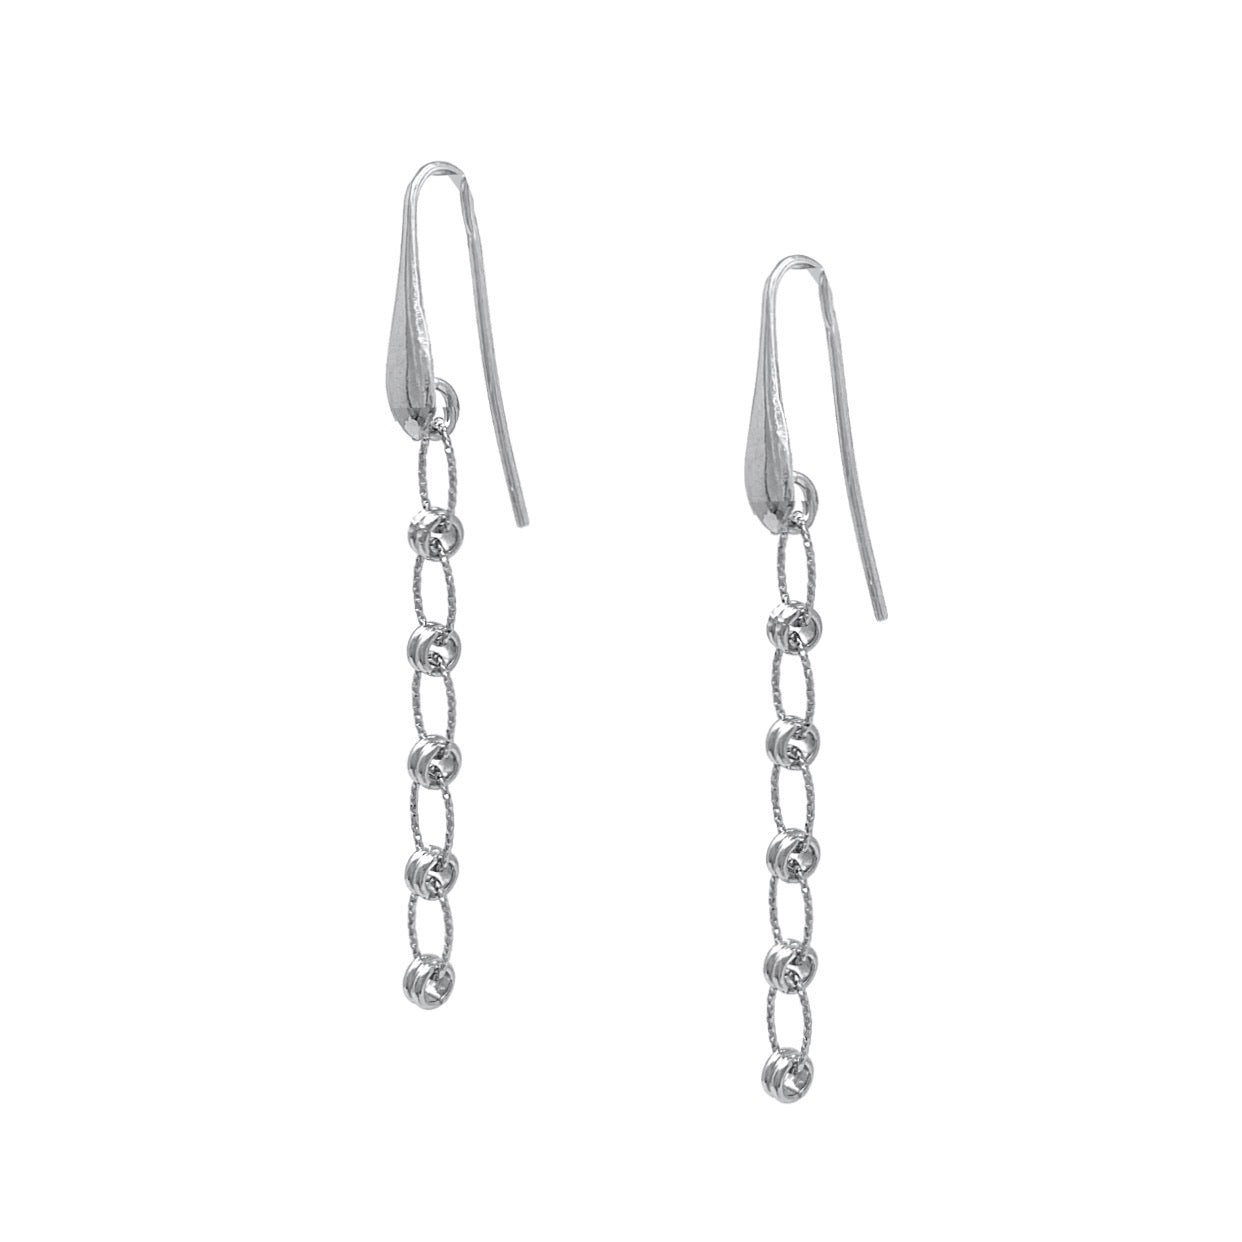 Ponte Vecchio Earrings in Silver